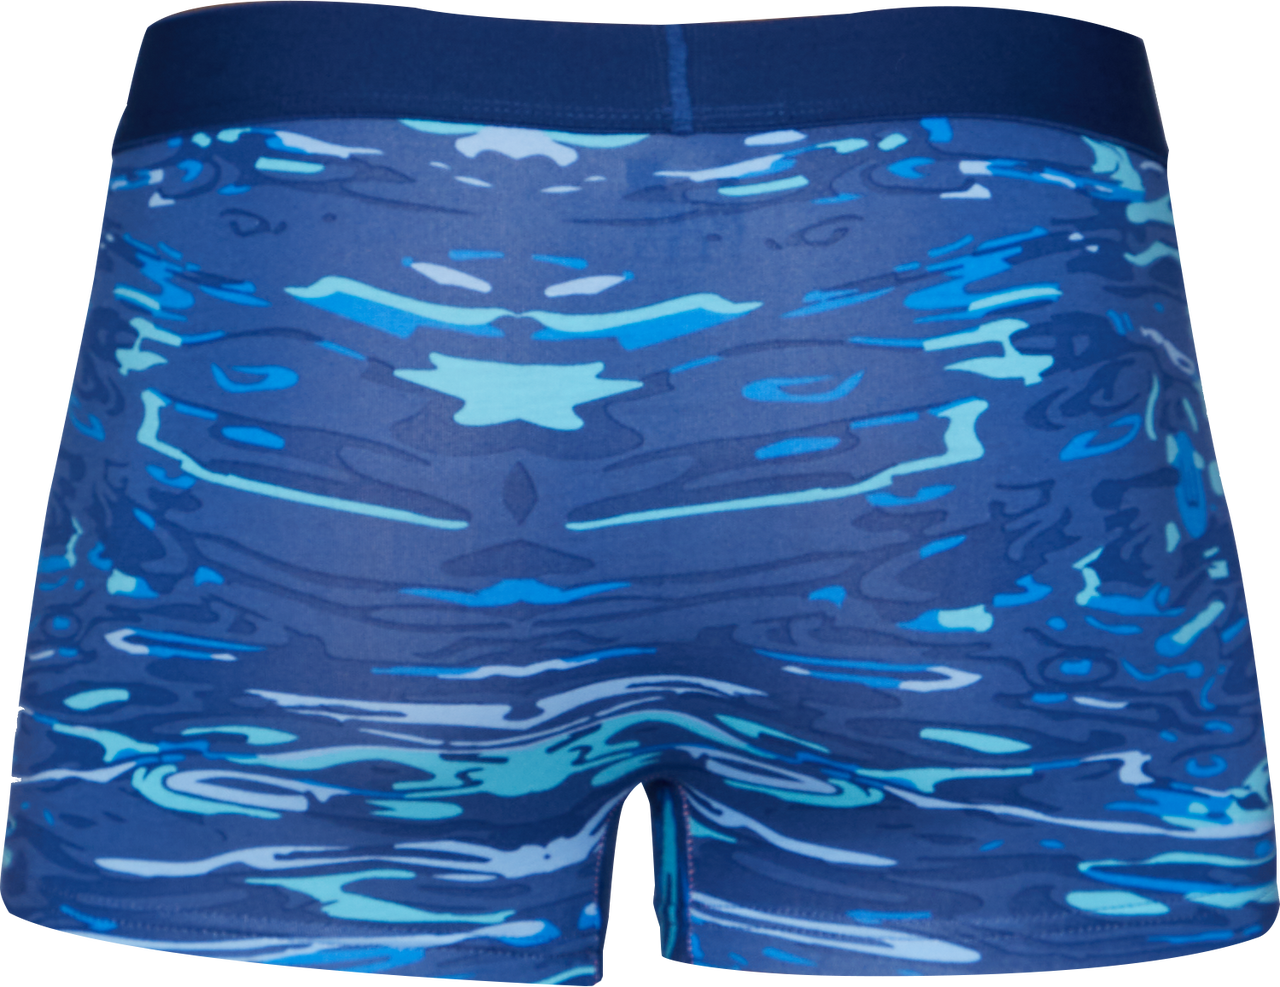 Trunk Style Briefs in Blue Liquid by Wood Underwear